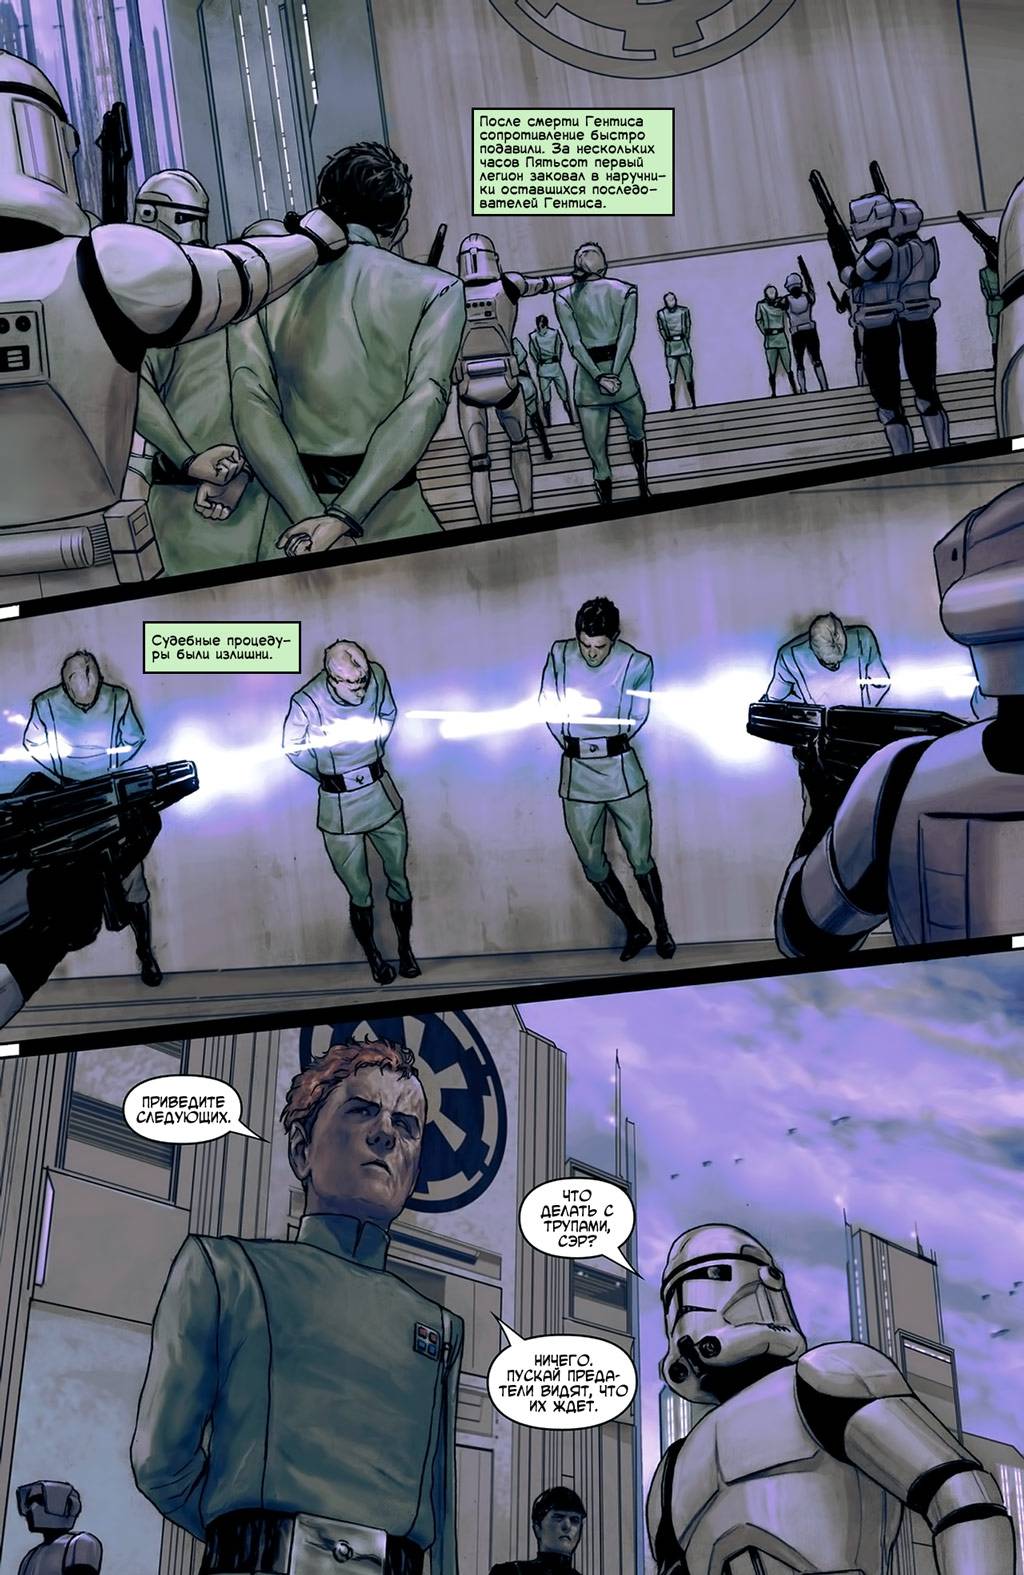 Звёздные войны: Дарт Вейдер и Тюрьма-Призрак №5 (Star Wars: Darth Vader and  the Ghost Prison #5) - страница 15 - читать комикс онлайн бесплатно |  UniComics